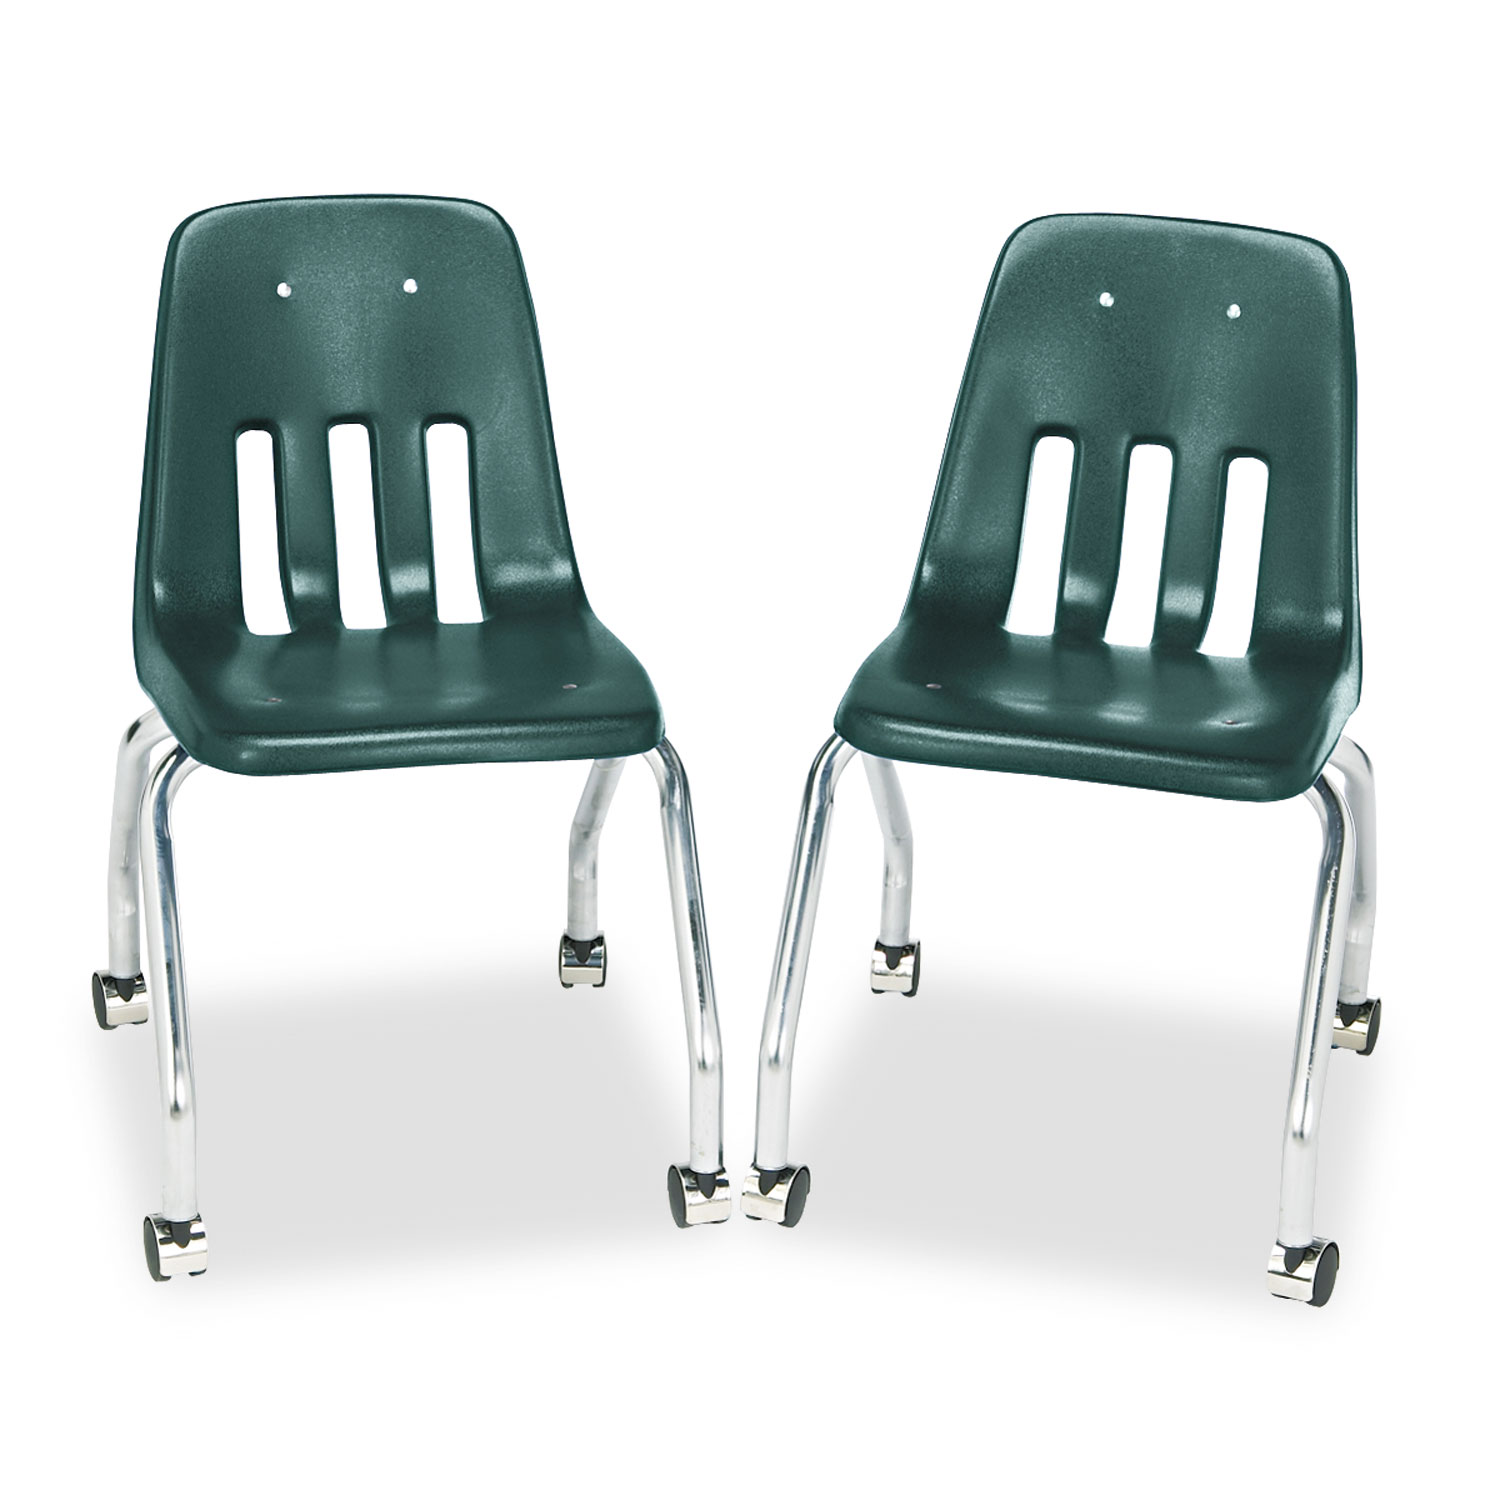 Standard Teachers Chair, 18-5/8 x 21 x 30, Forest Green, 2/Carton